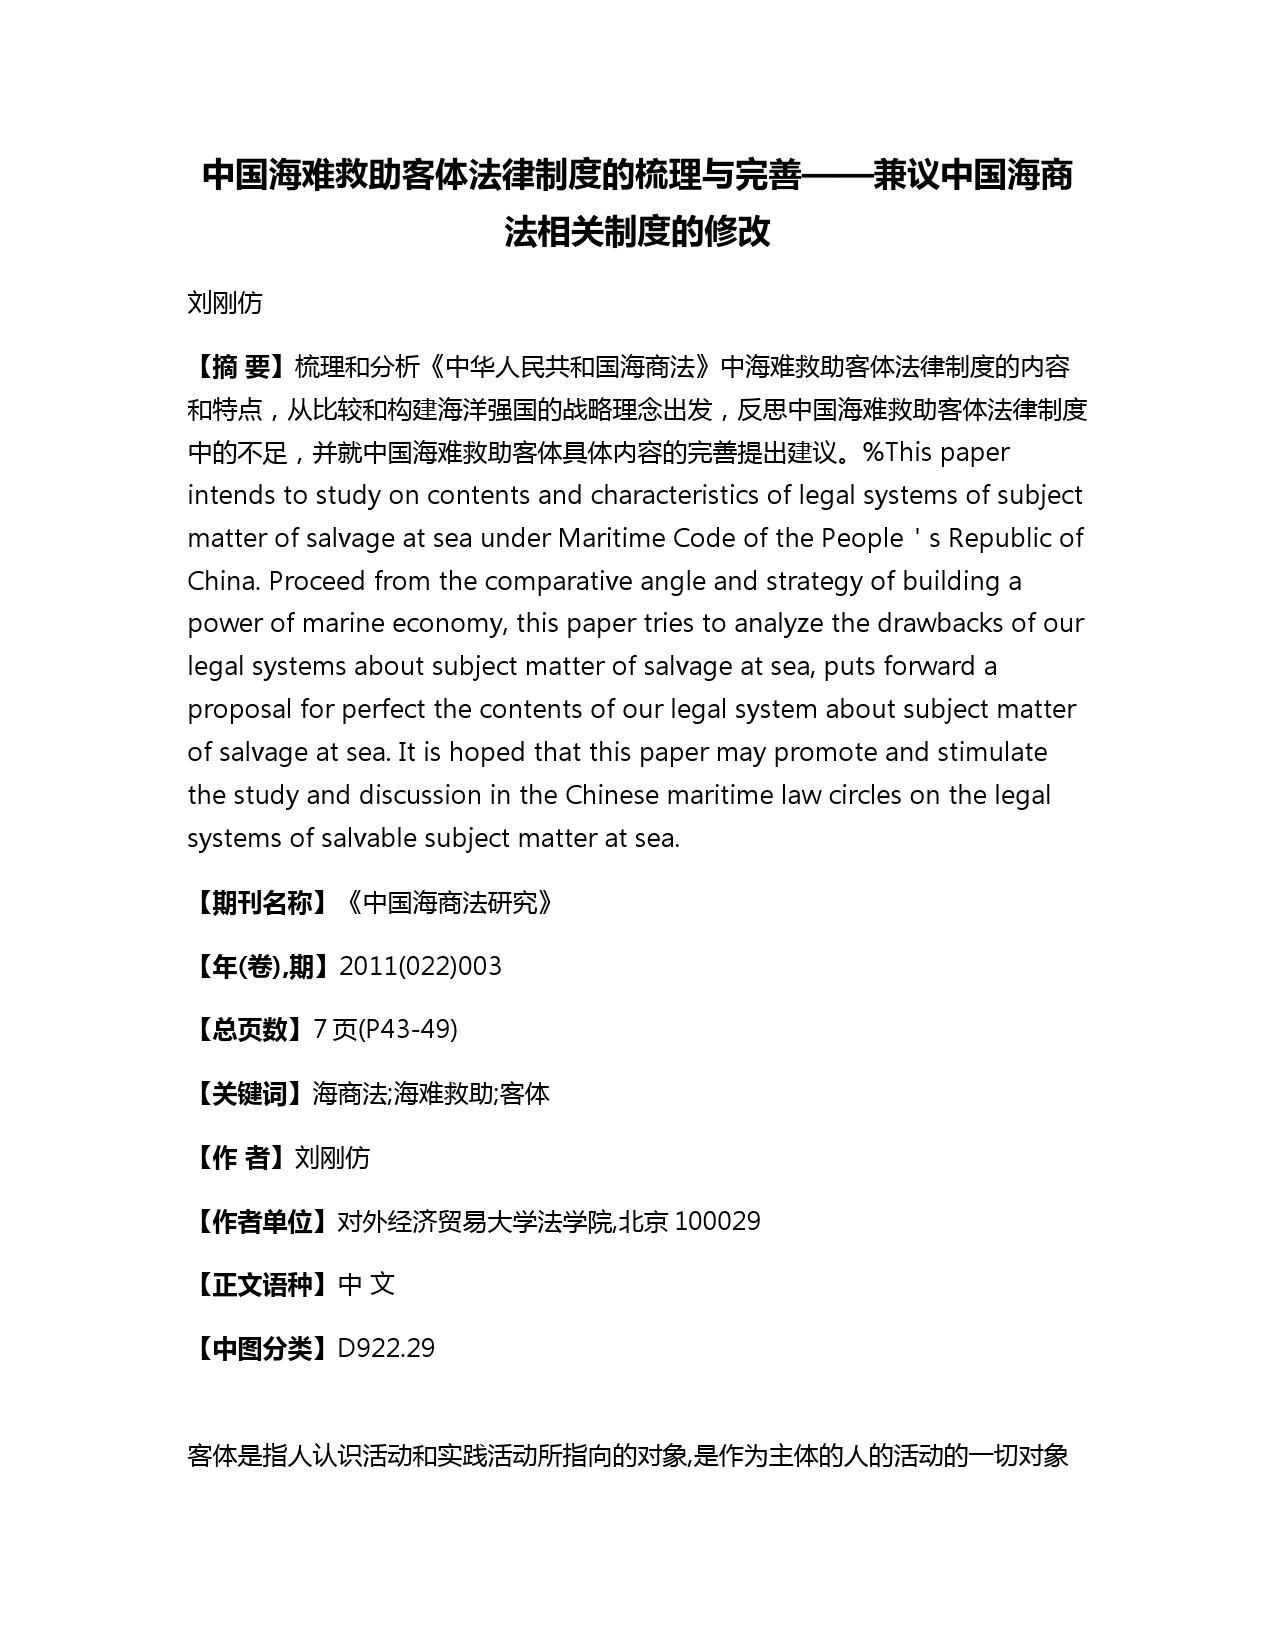 中国海难救助客体法律制度的梳理与完善——兼议中国海商法相关制度的修改